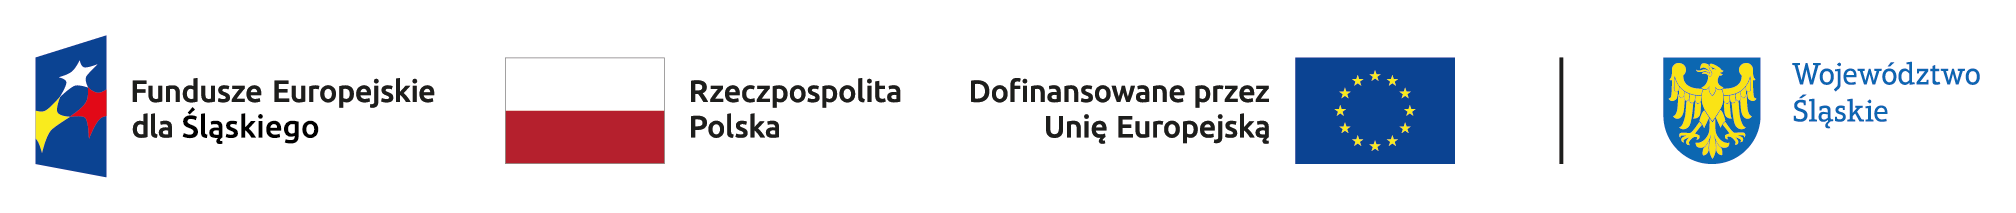 Belka z logotypami UE, Polski oraz województwa śląskiego